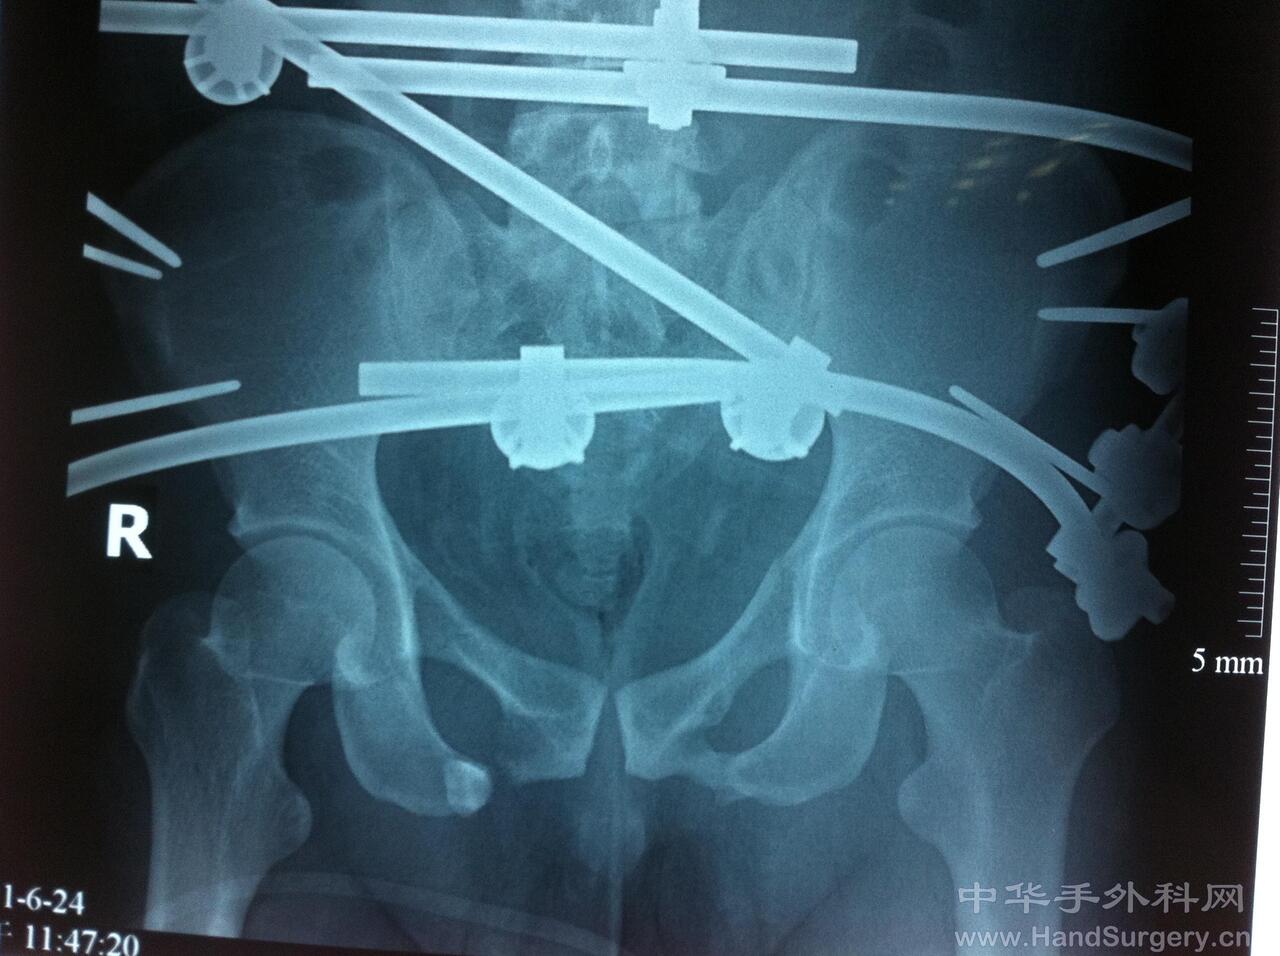 骨盆骨折急诊手术外支架复位固定 - 经典病例 